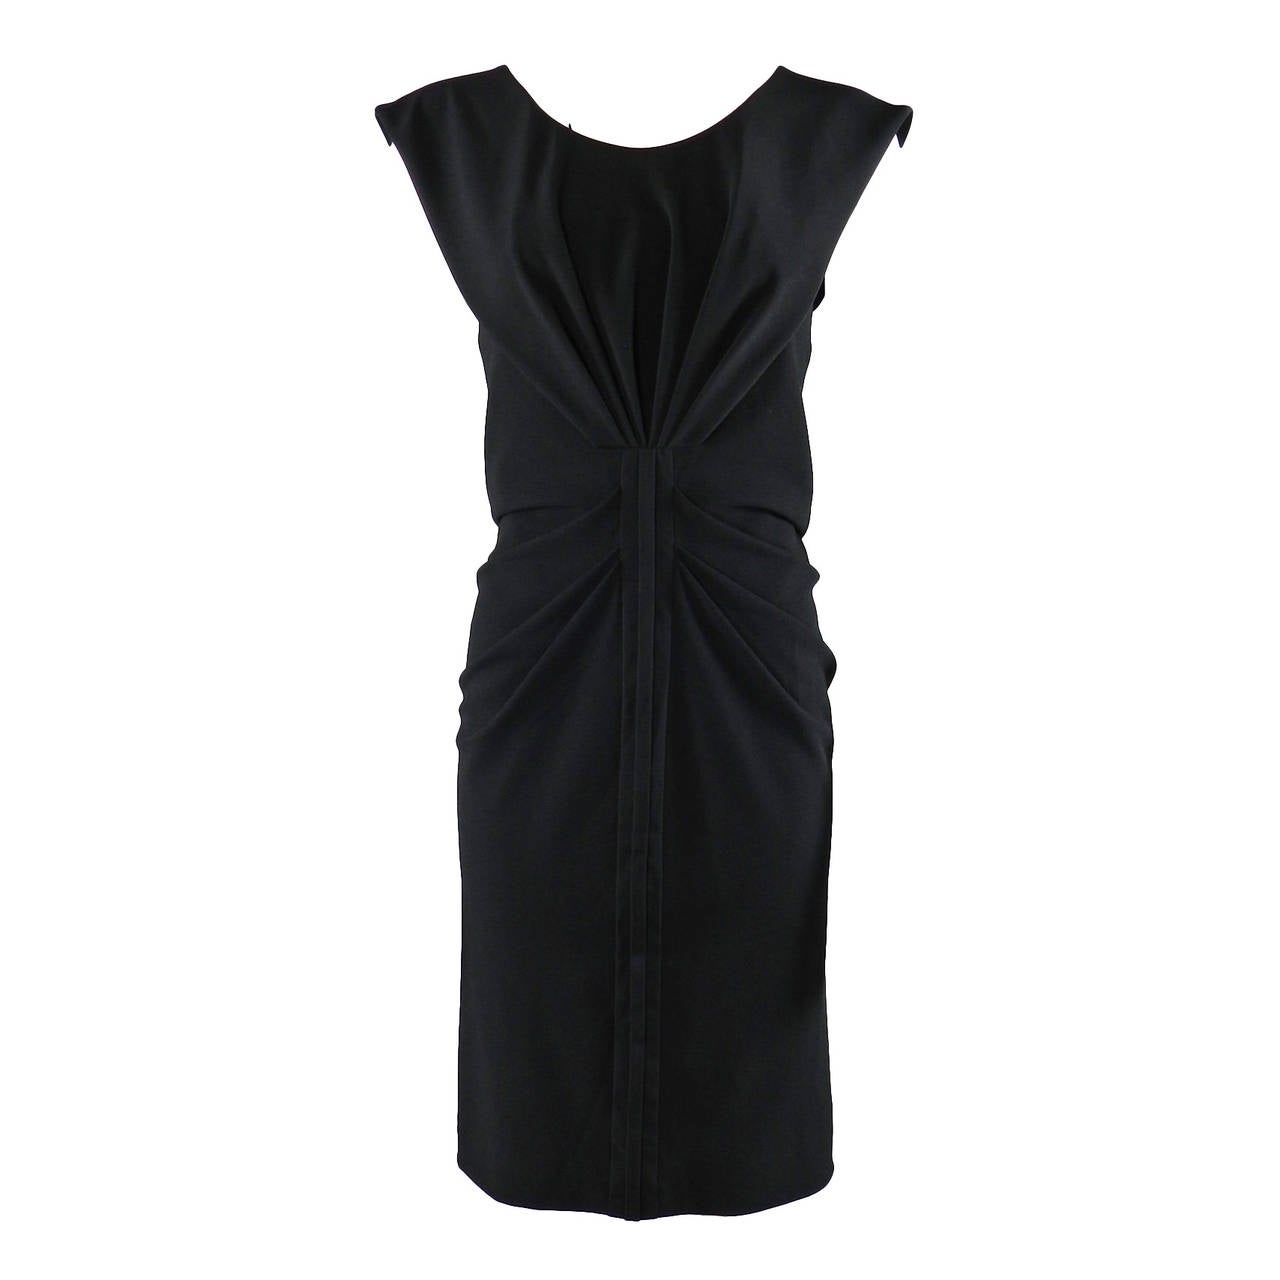 Balenciaga Black Dress with Shirred Front